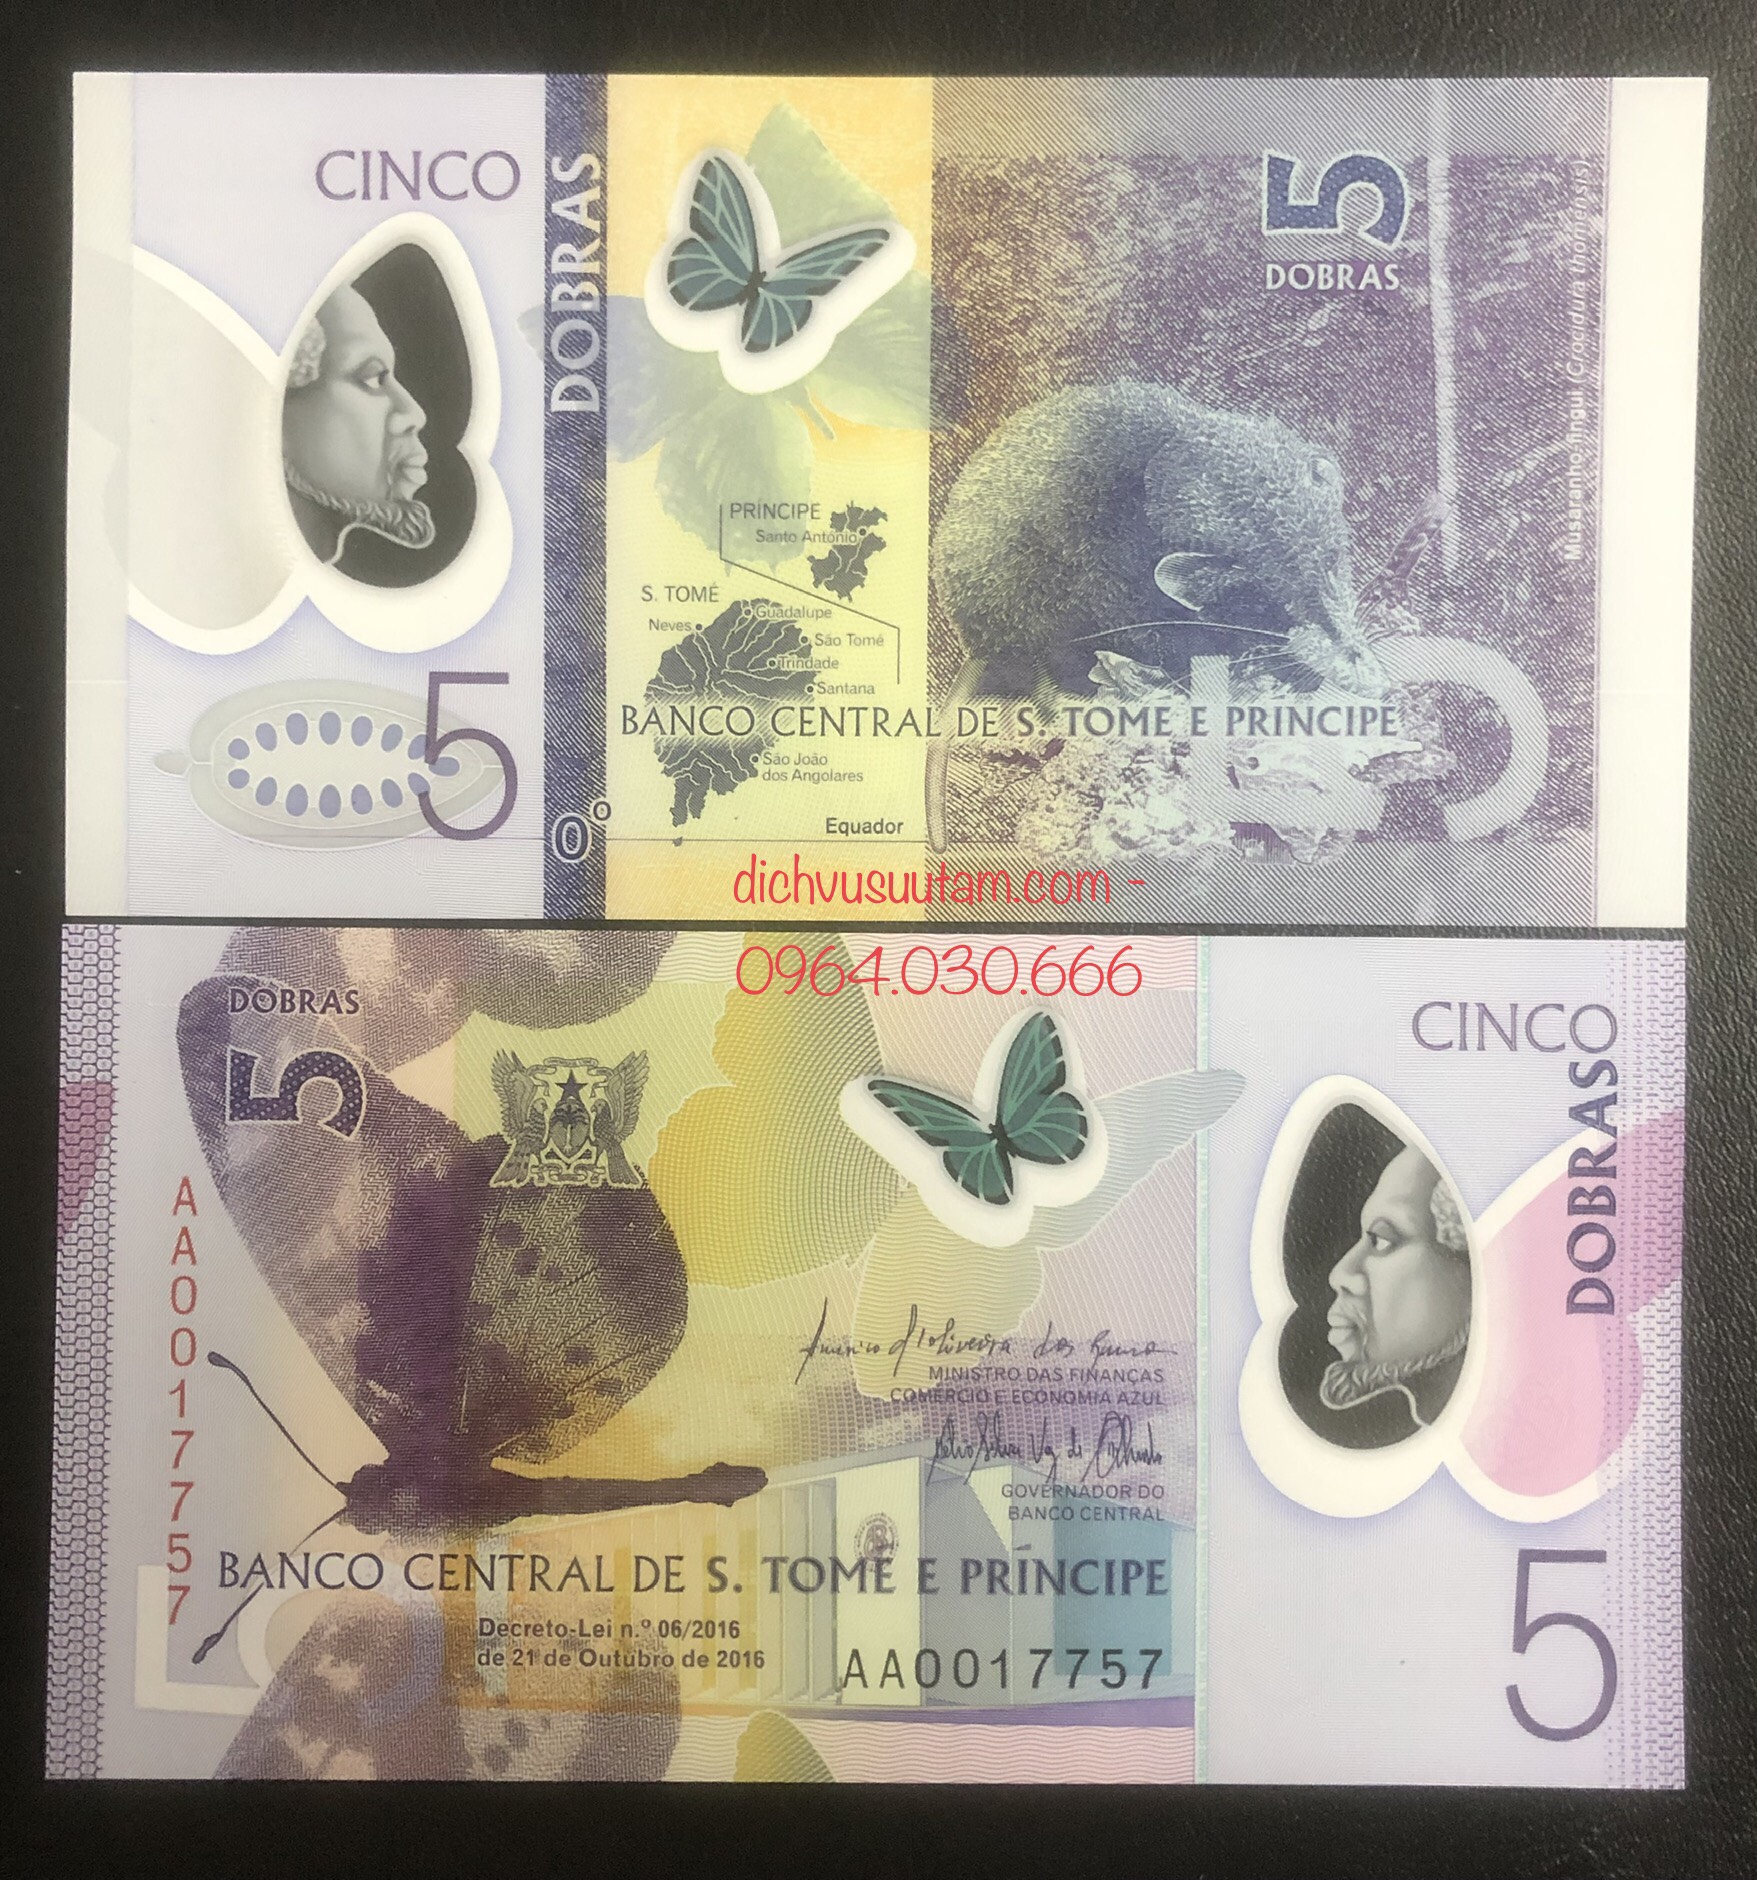 Tiền Sao Tome và Principe 5 dobras polymer hình con Chuột, tuổi Tý sưu tầm